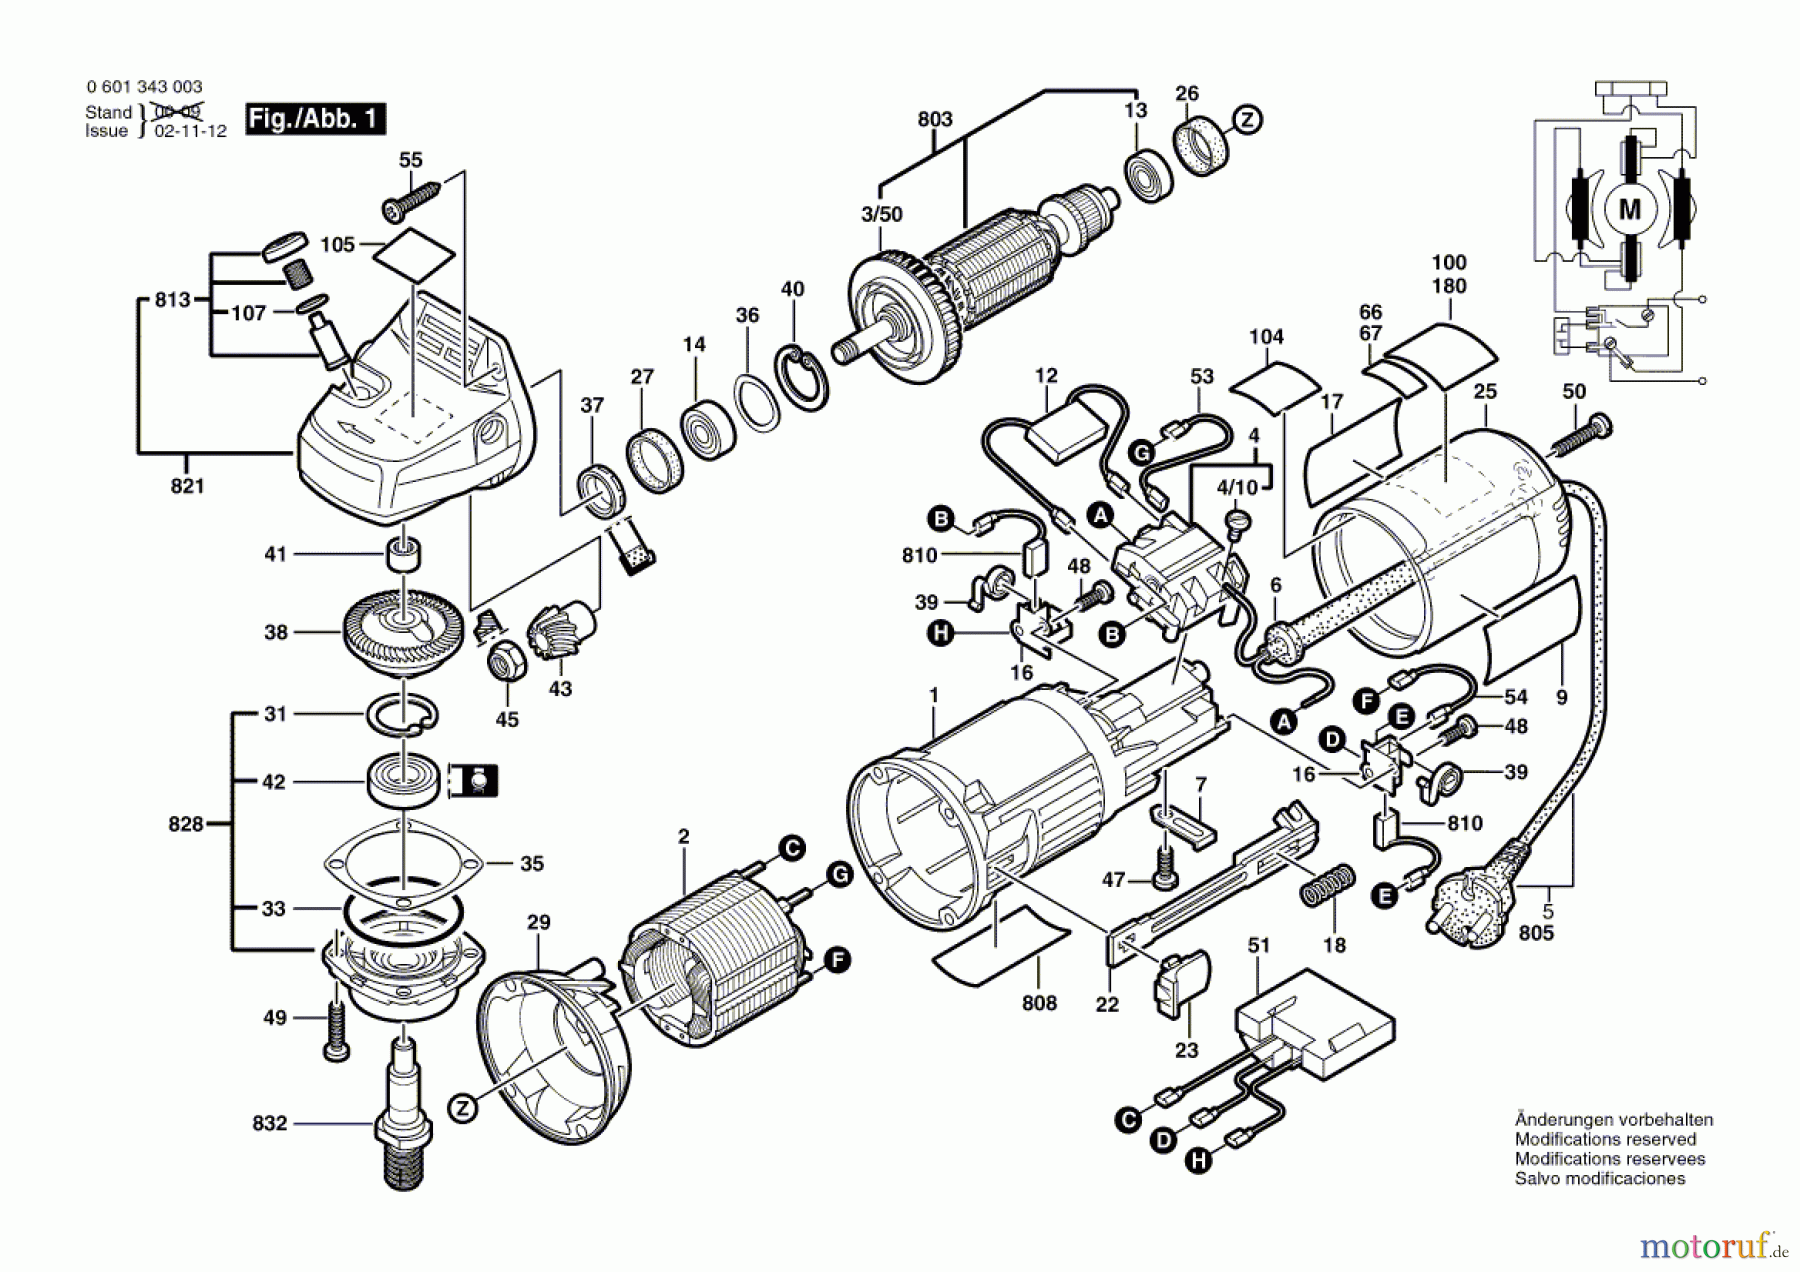  Bosch Werkzeug Winkelschleifer GWS 9-125 CS Seite 1